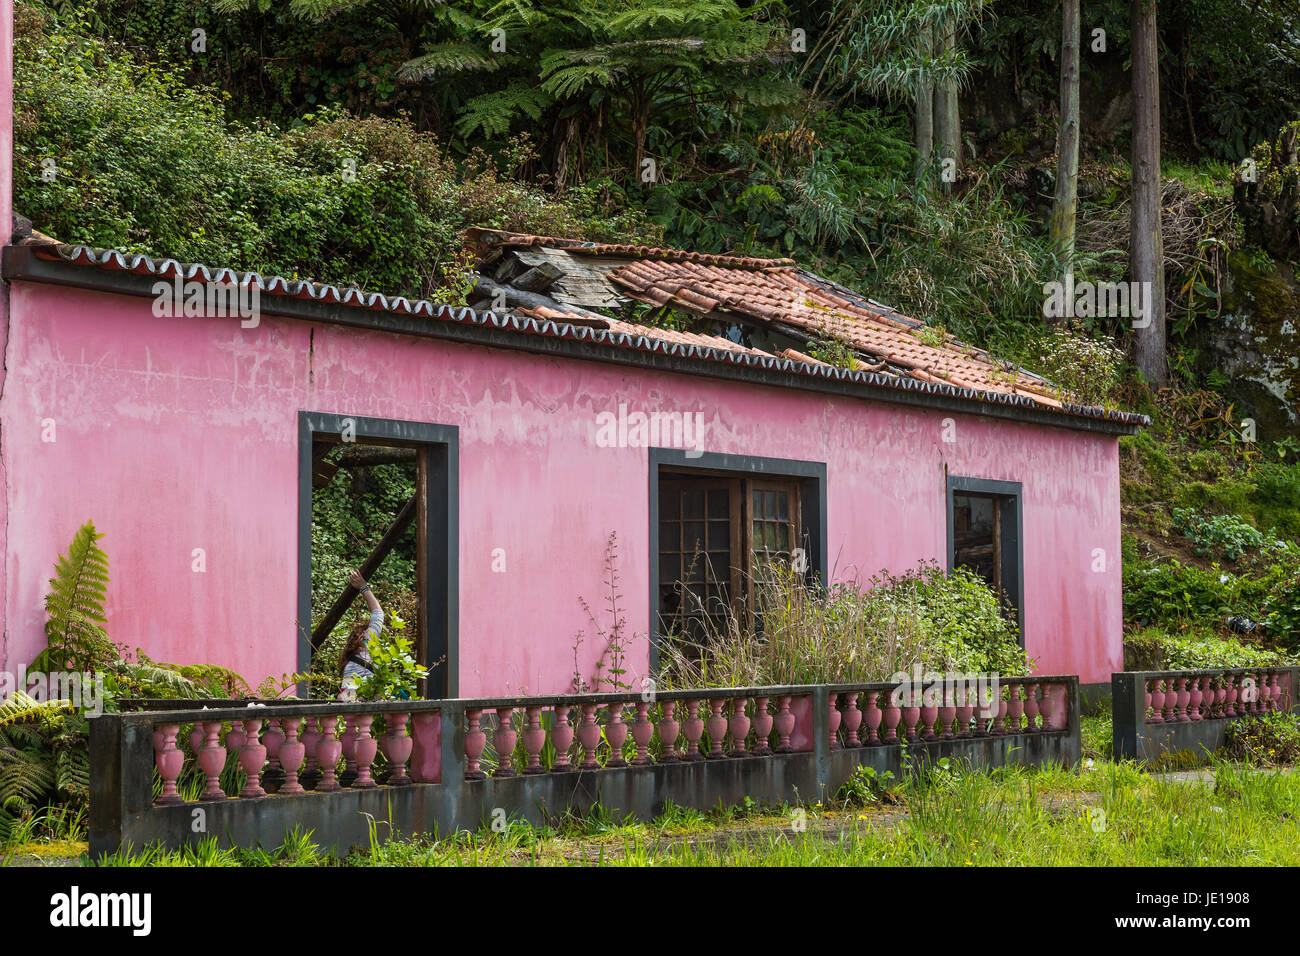 Ruine d'une vieille maison à Sao bras sur l'île de São Miguel, l'archipel des Açores dans l'océan atlantique appartenant au portugal Banque D'Images